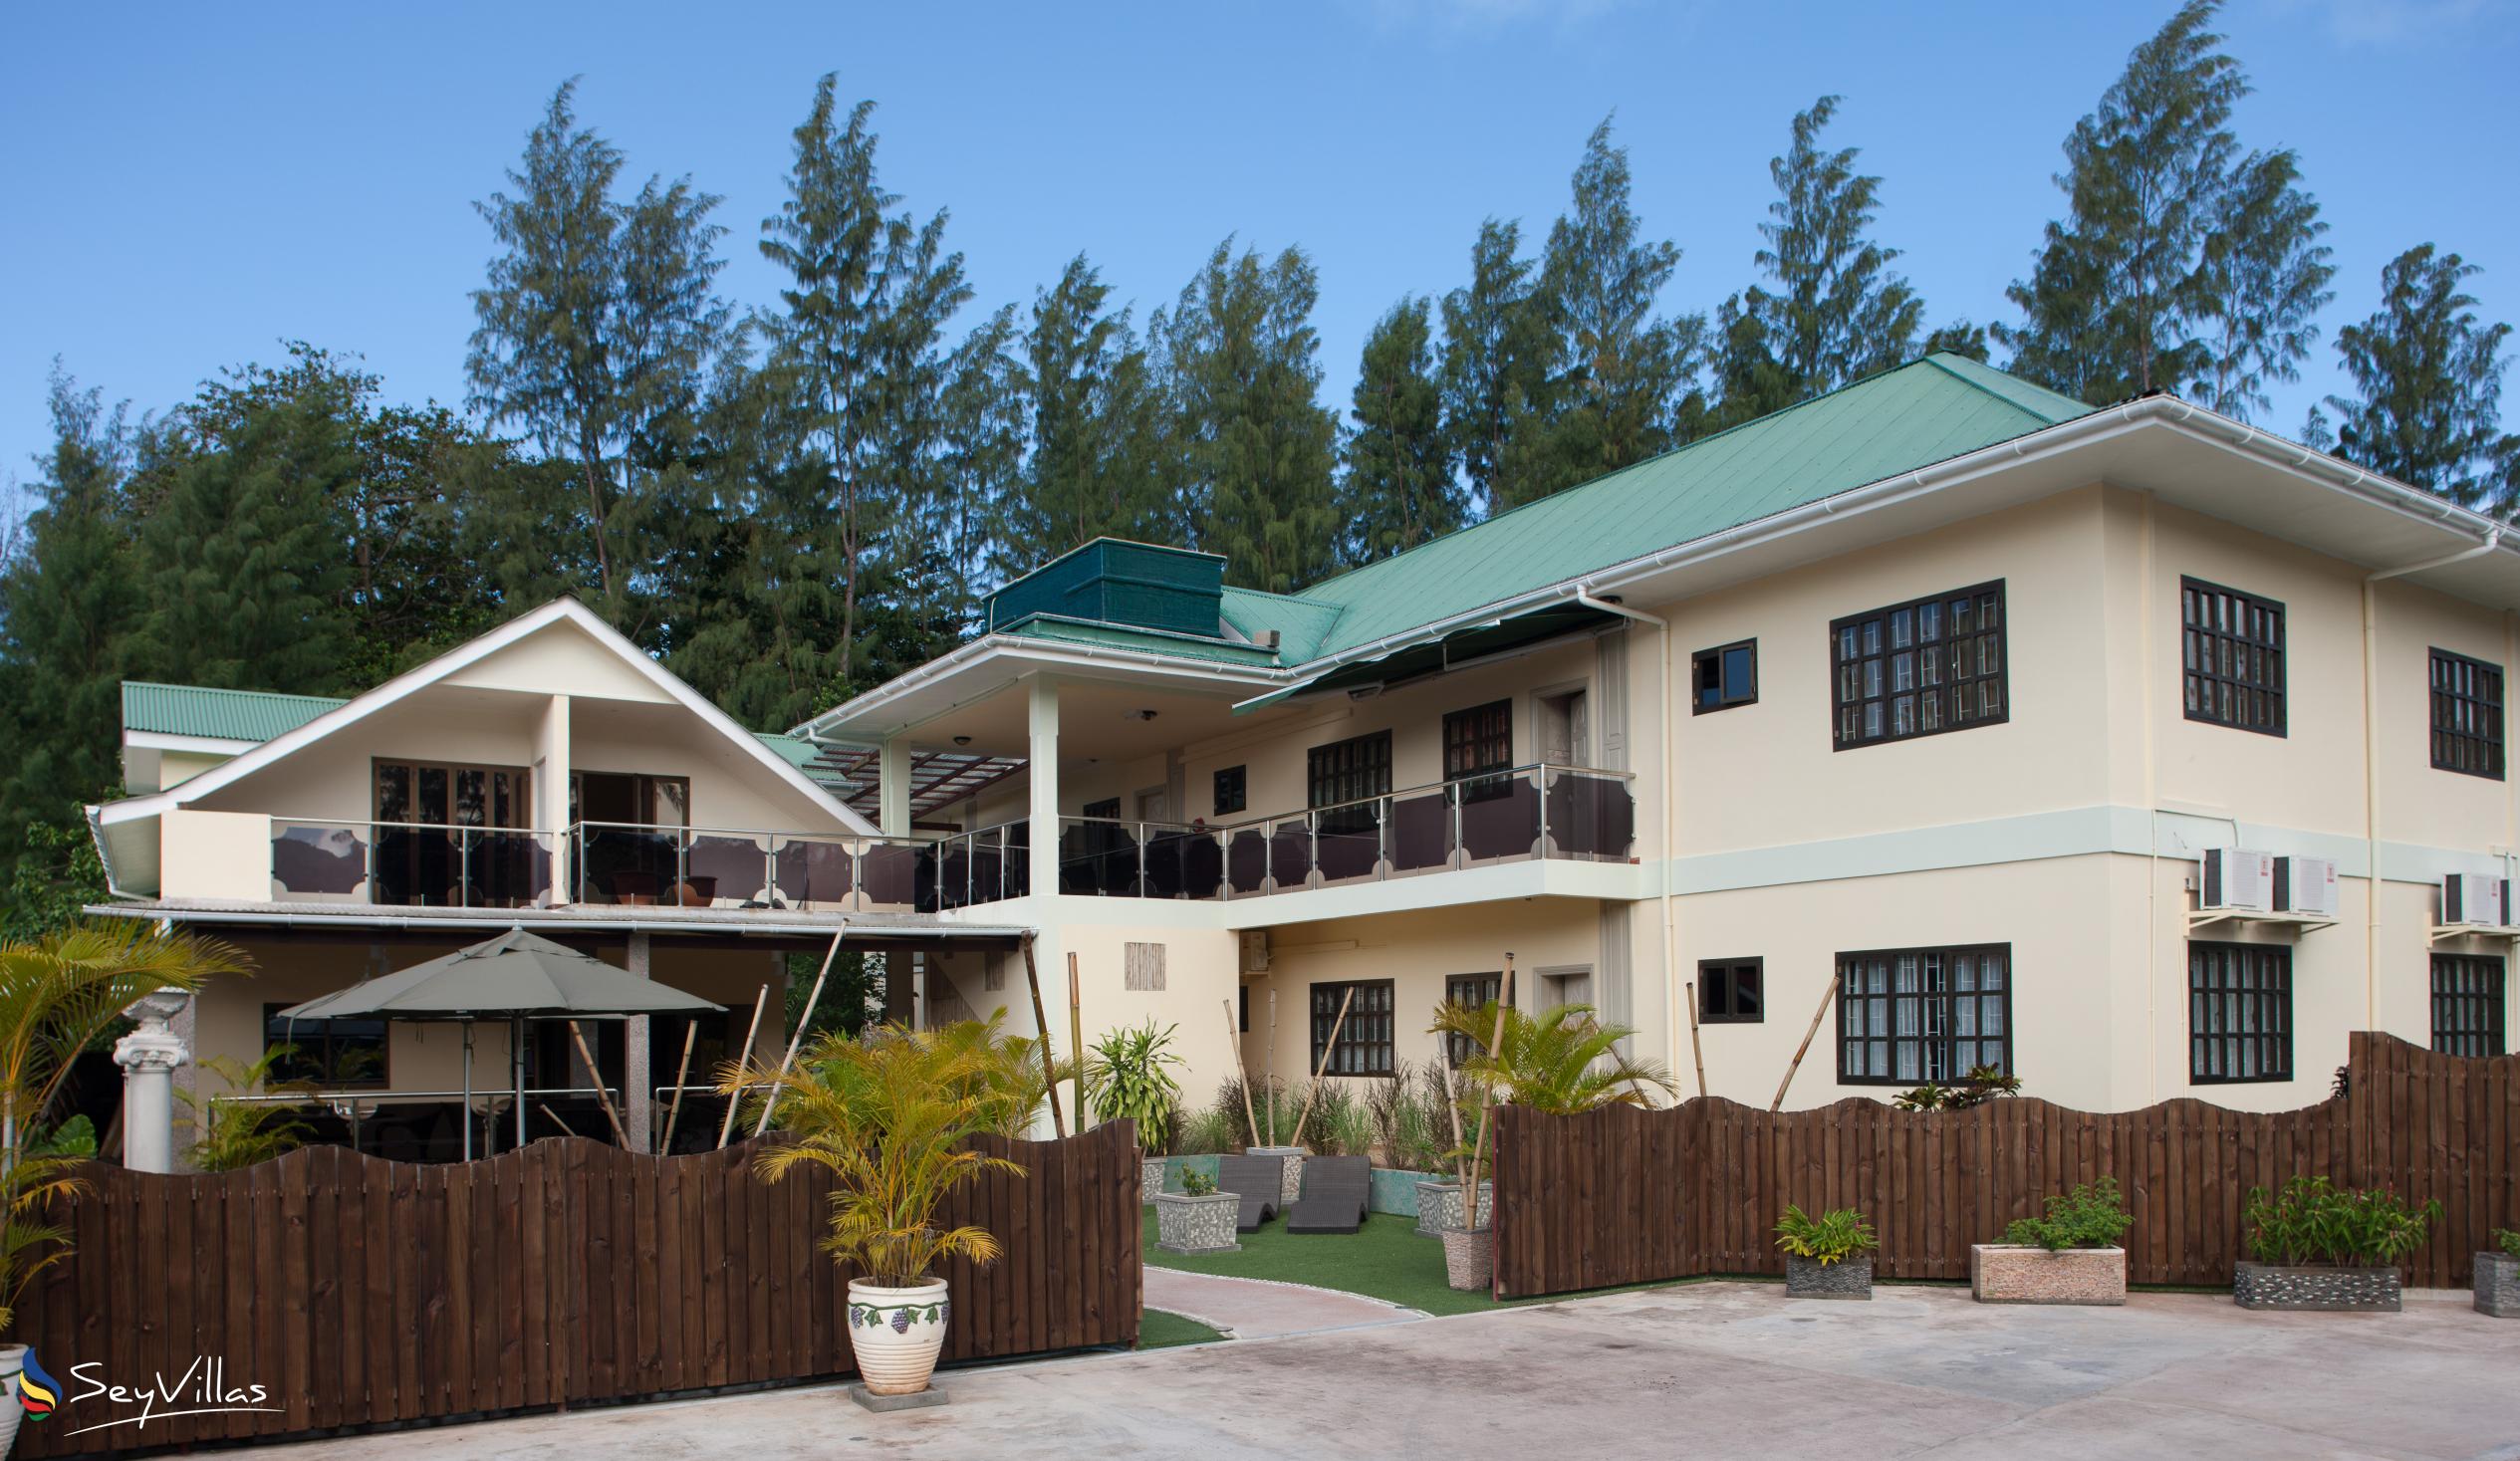 Foto 10: Chez Bea Villa - Aussenbereich - Praslin (Seychellen)